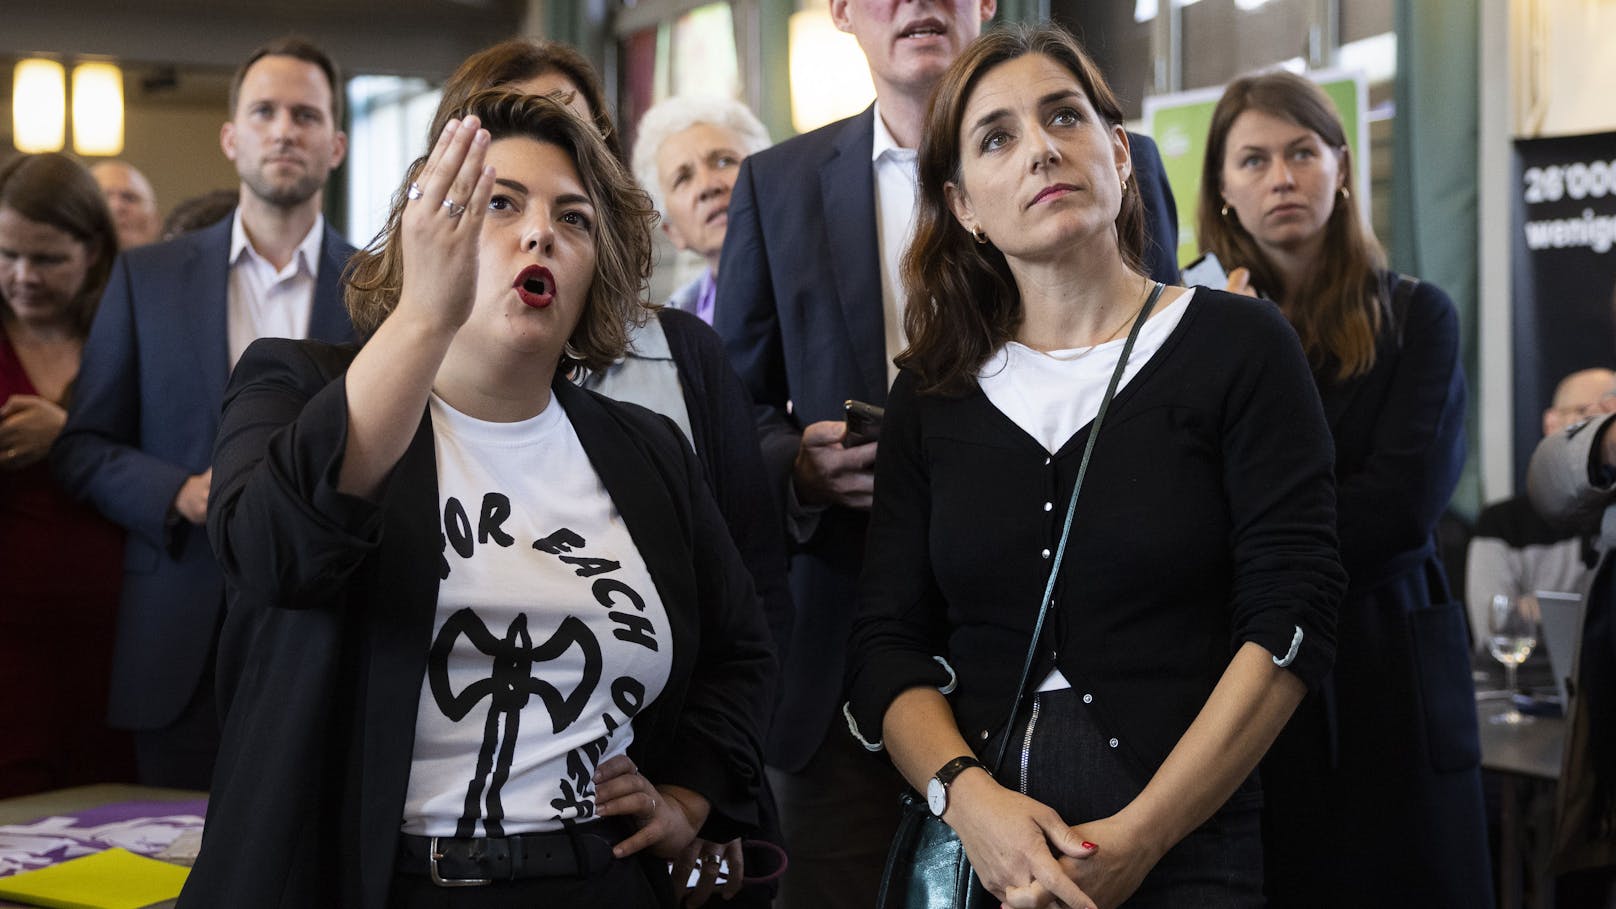 Tamara Funiciello und Flavia Wasserfallen von den Sozialdemokraten waren enttäuscht vom Resultat.